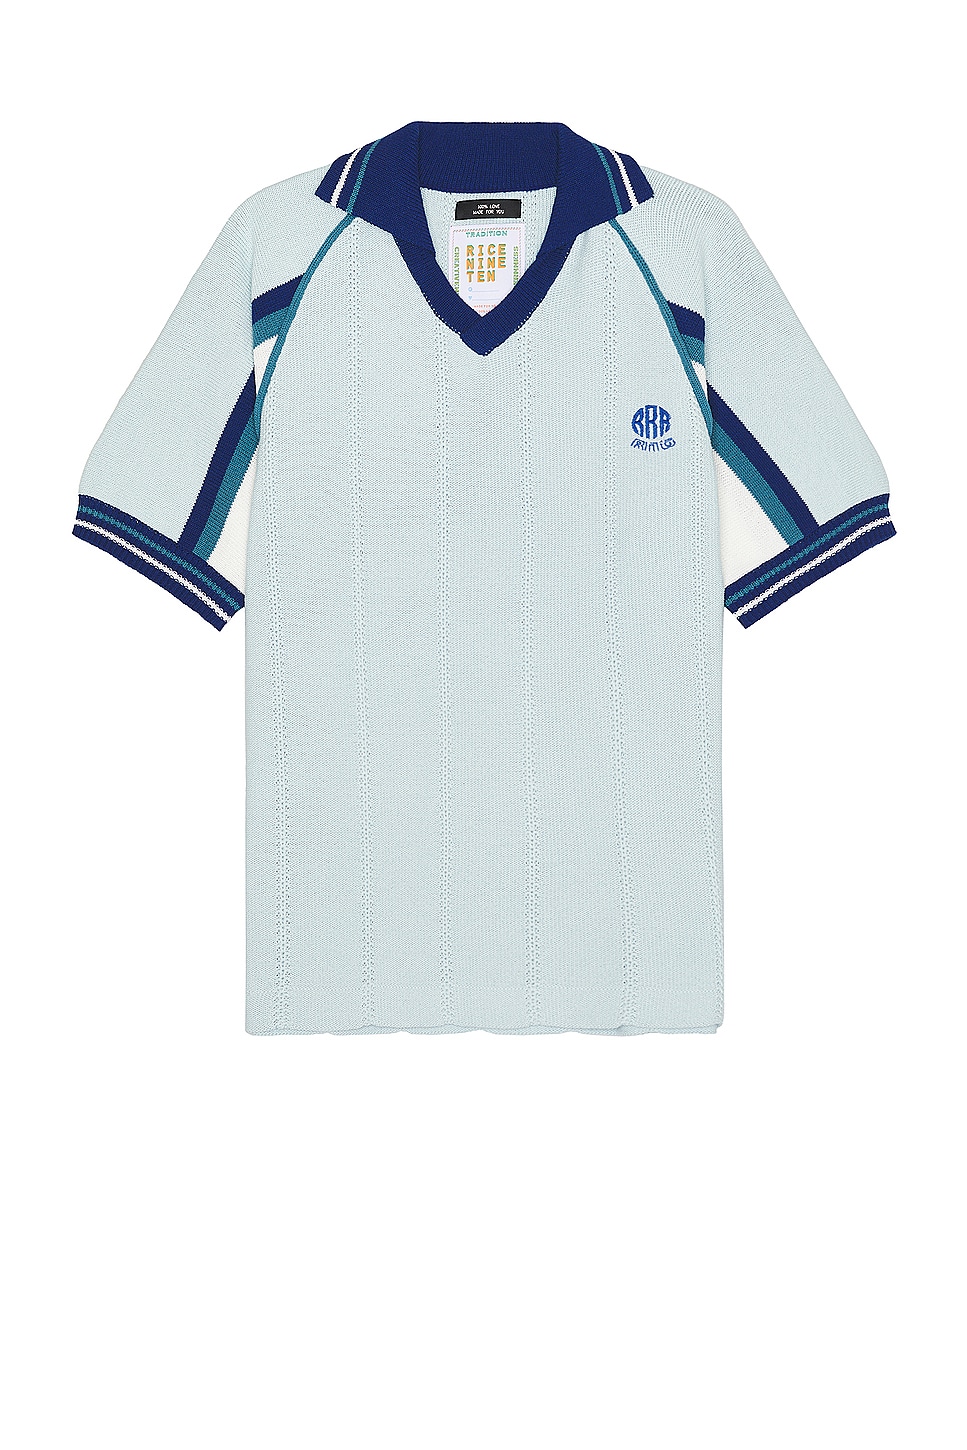 Image 1 of rice nine ten Knitting Soccer Jersey in Light Blue